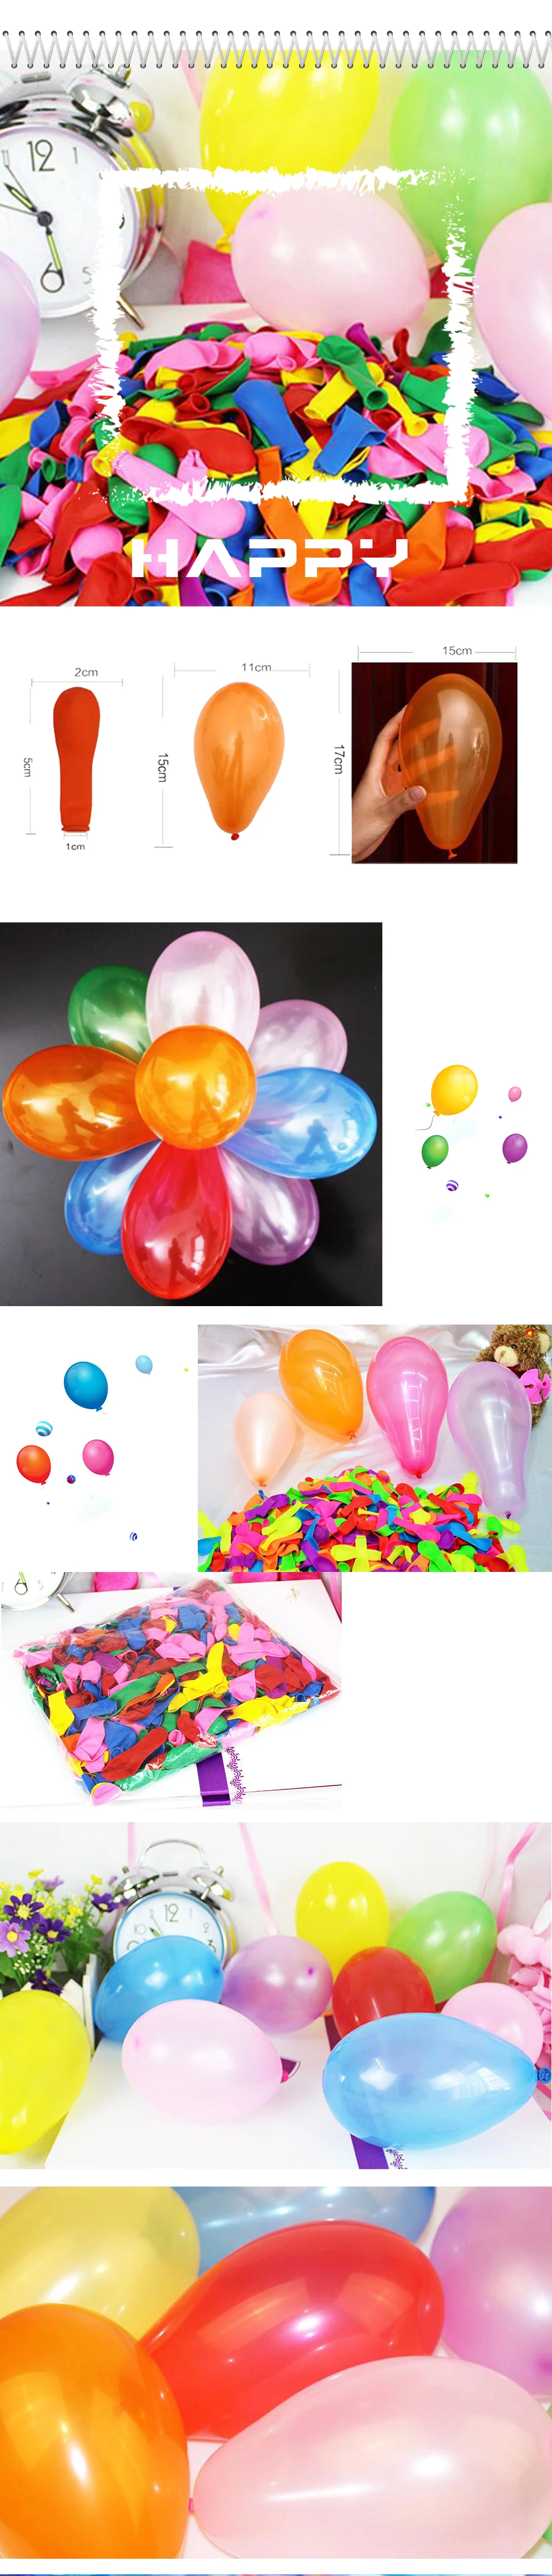 Хорошая 500 шт./партия No3 круглые латексные маленькие воздушные шары рождественские воздушные шары для свадебной вечеринки игрушечная бомба яблоко